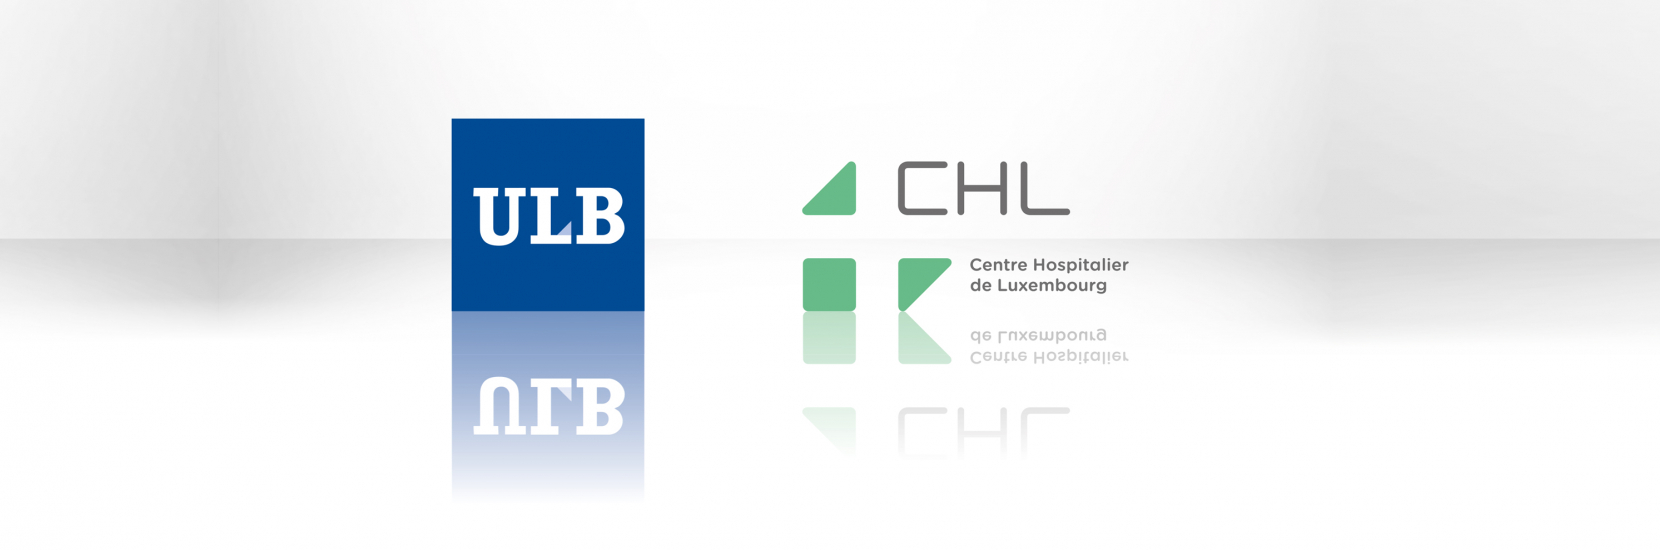 Partenariat renouvelé entre l'ULB et le CHL